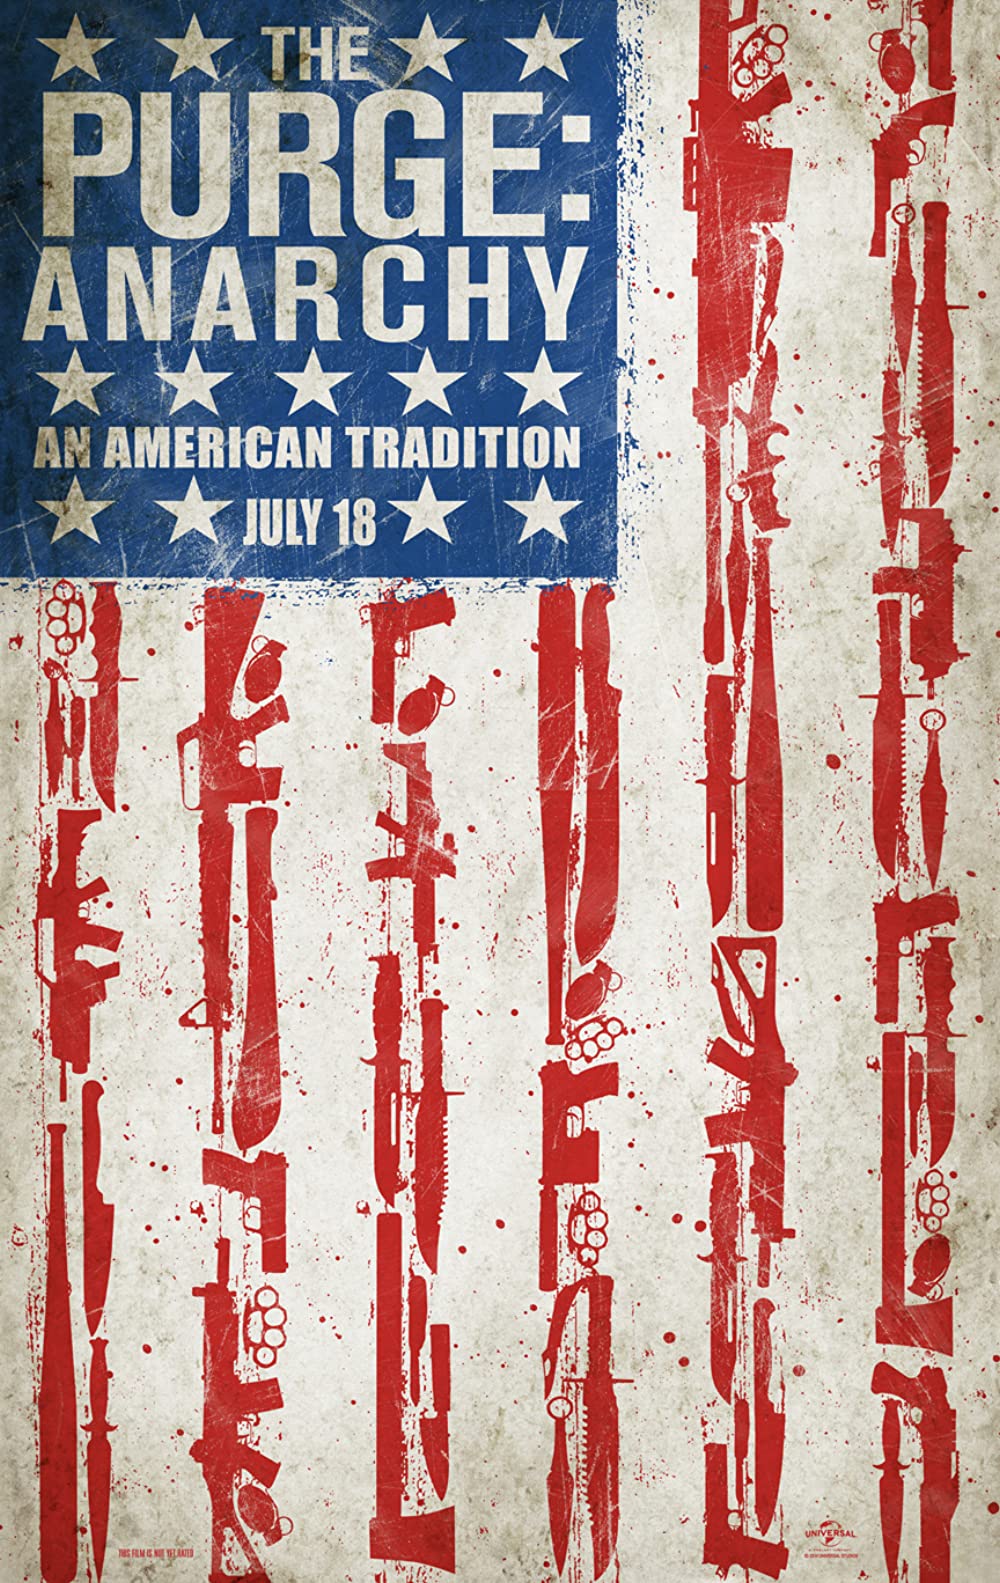 The Purge: Anarchy คืนอำมหิต: คืนล่าฆ่าไม่ผิด (2014)